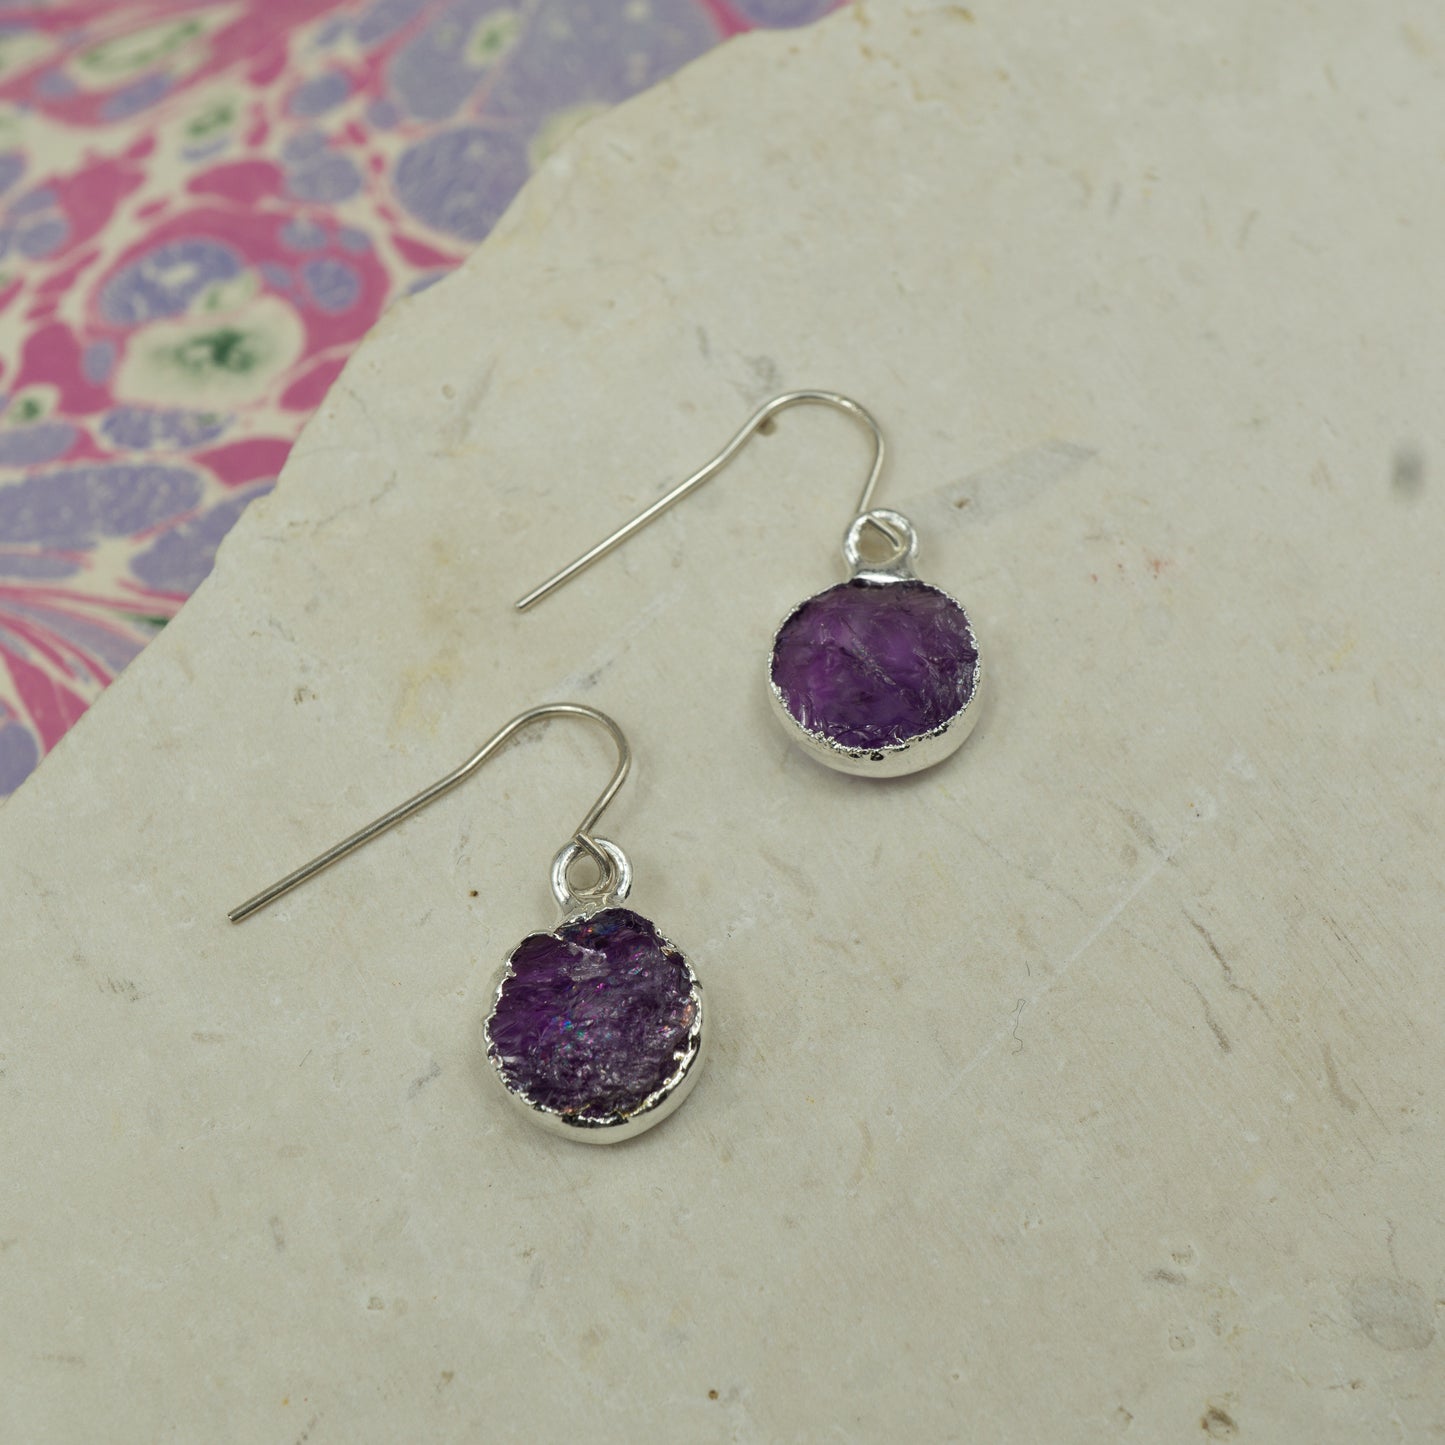 Round purple amethyst earrings on hooks finished in silver.